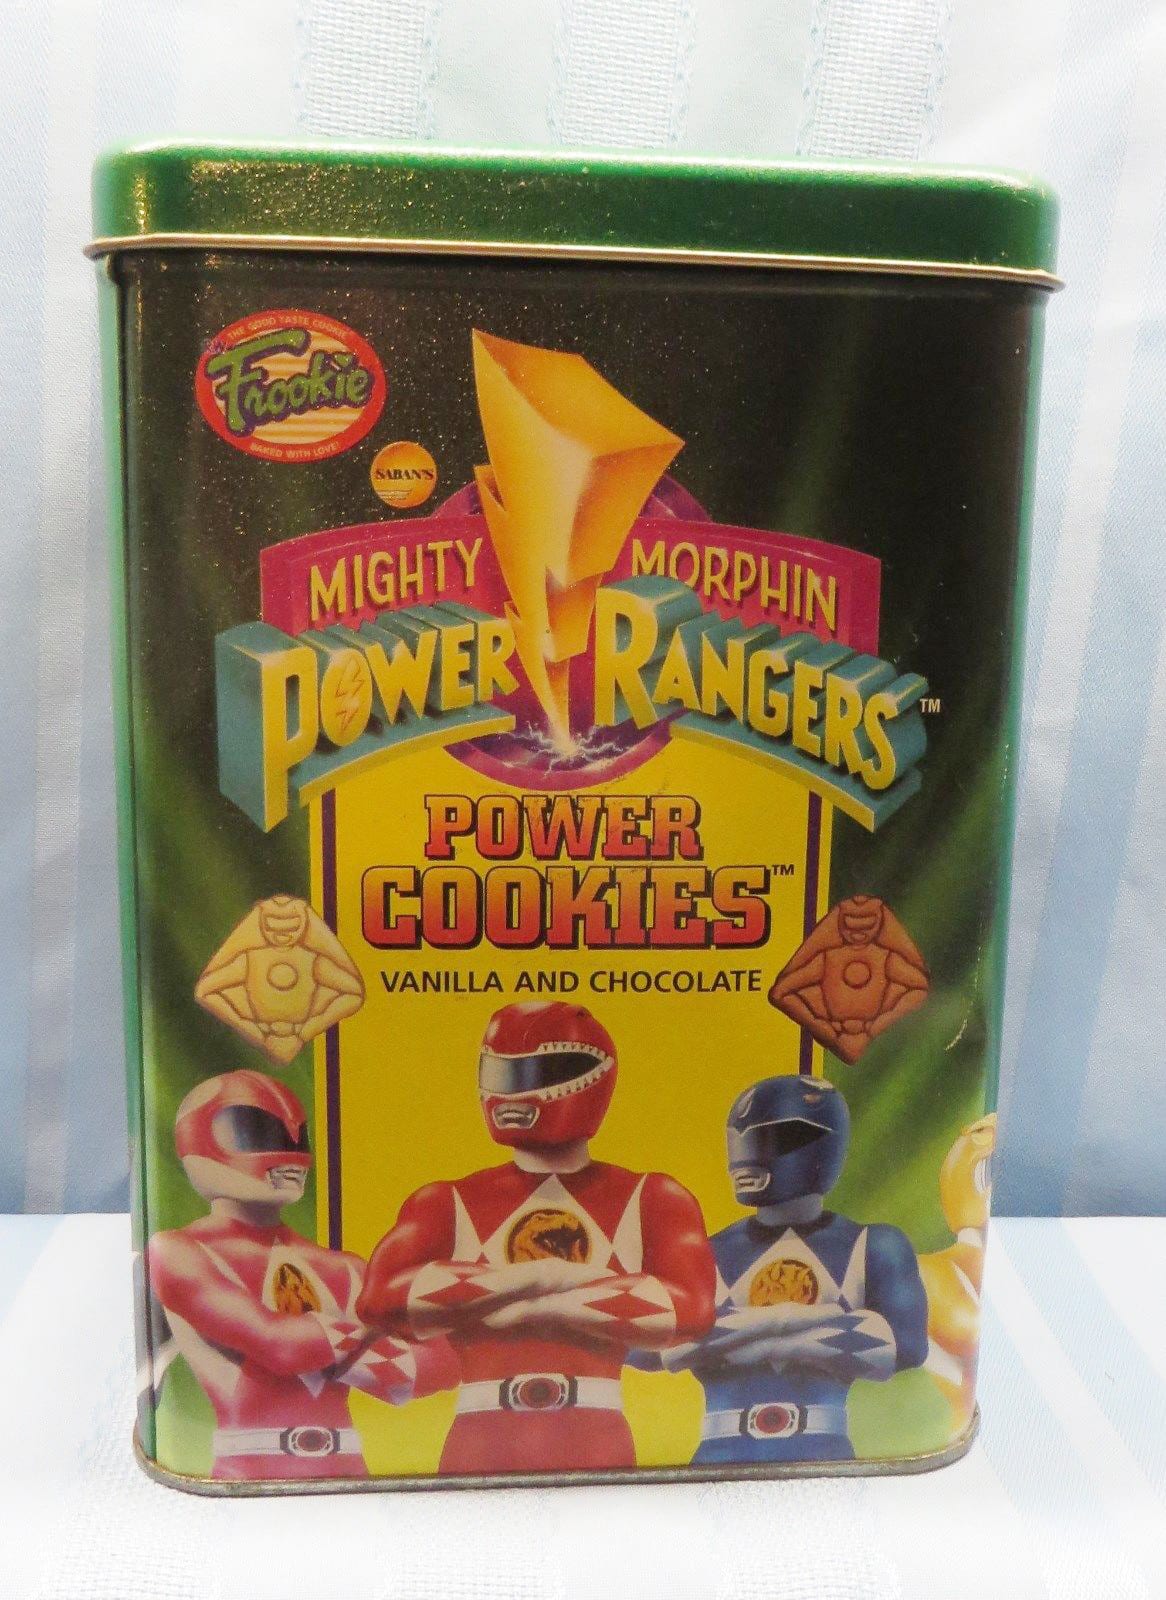 Power Cookies tin